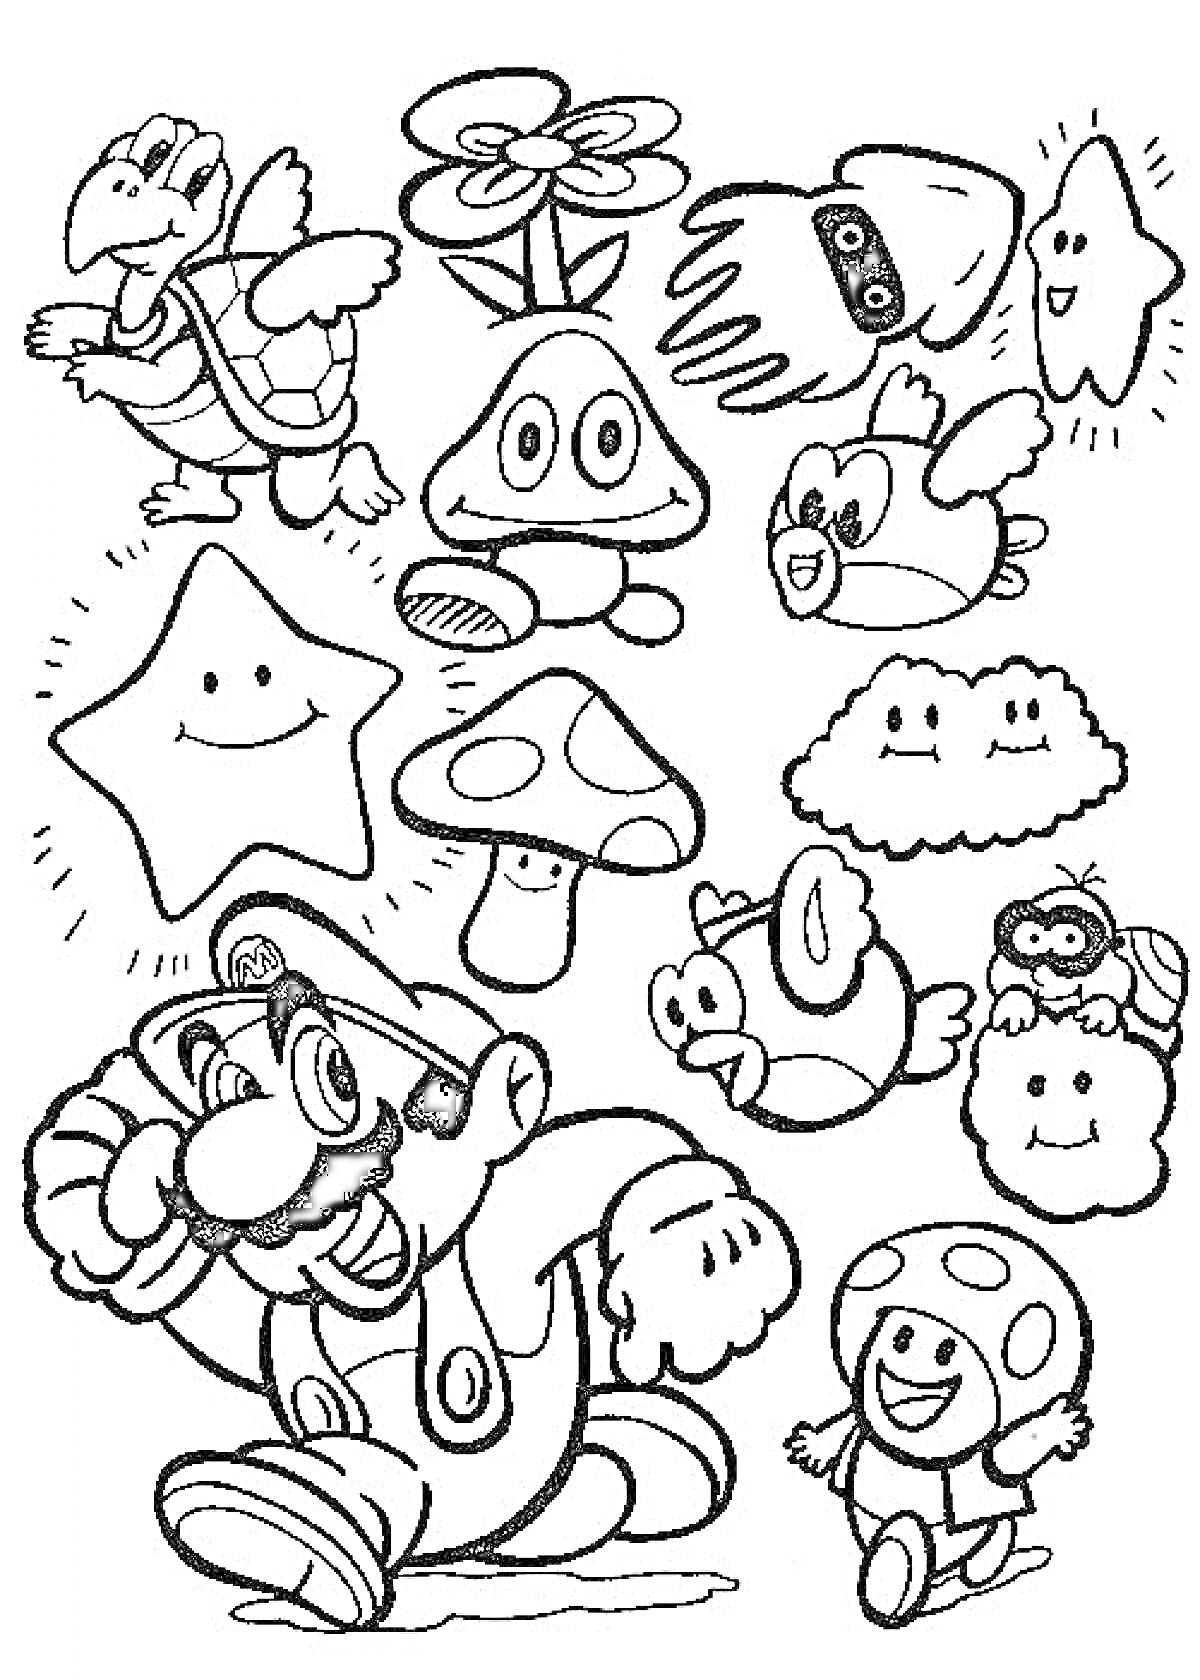 Раскраска Марио, Луиджи, звезда, летающий черепаха, грибы, цветок огня, облако, рыбка и другие персонажи из Марио